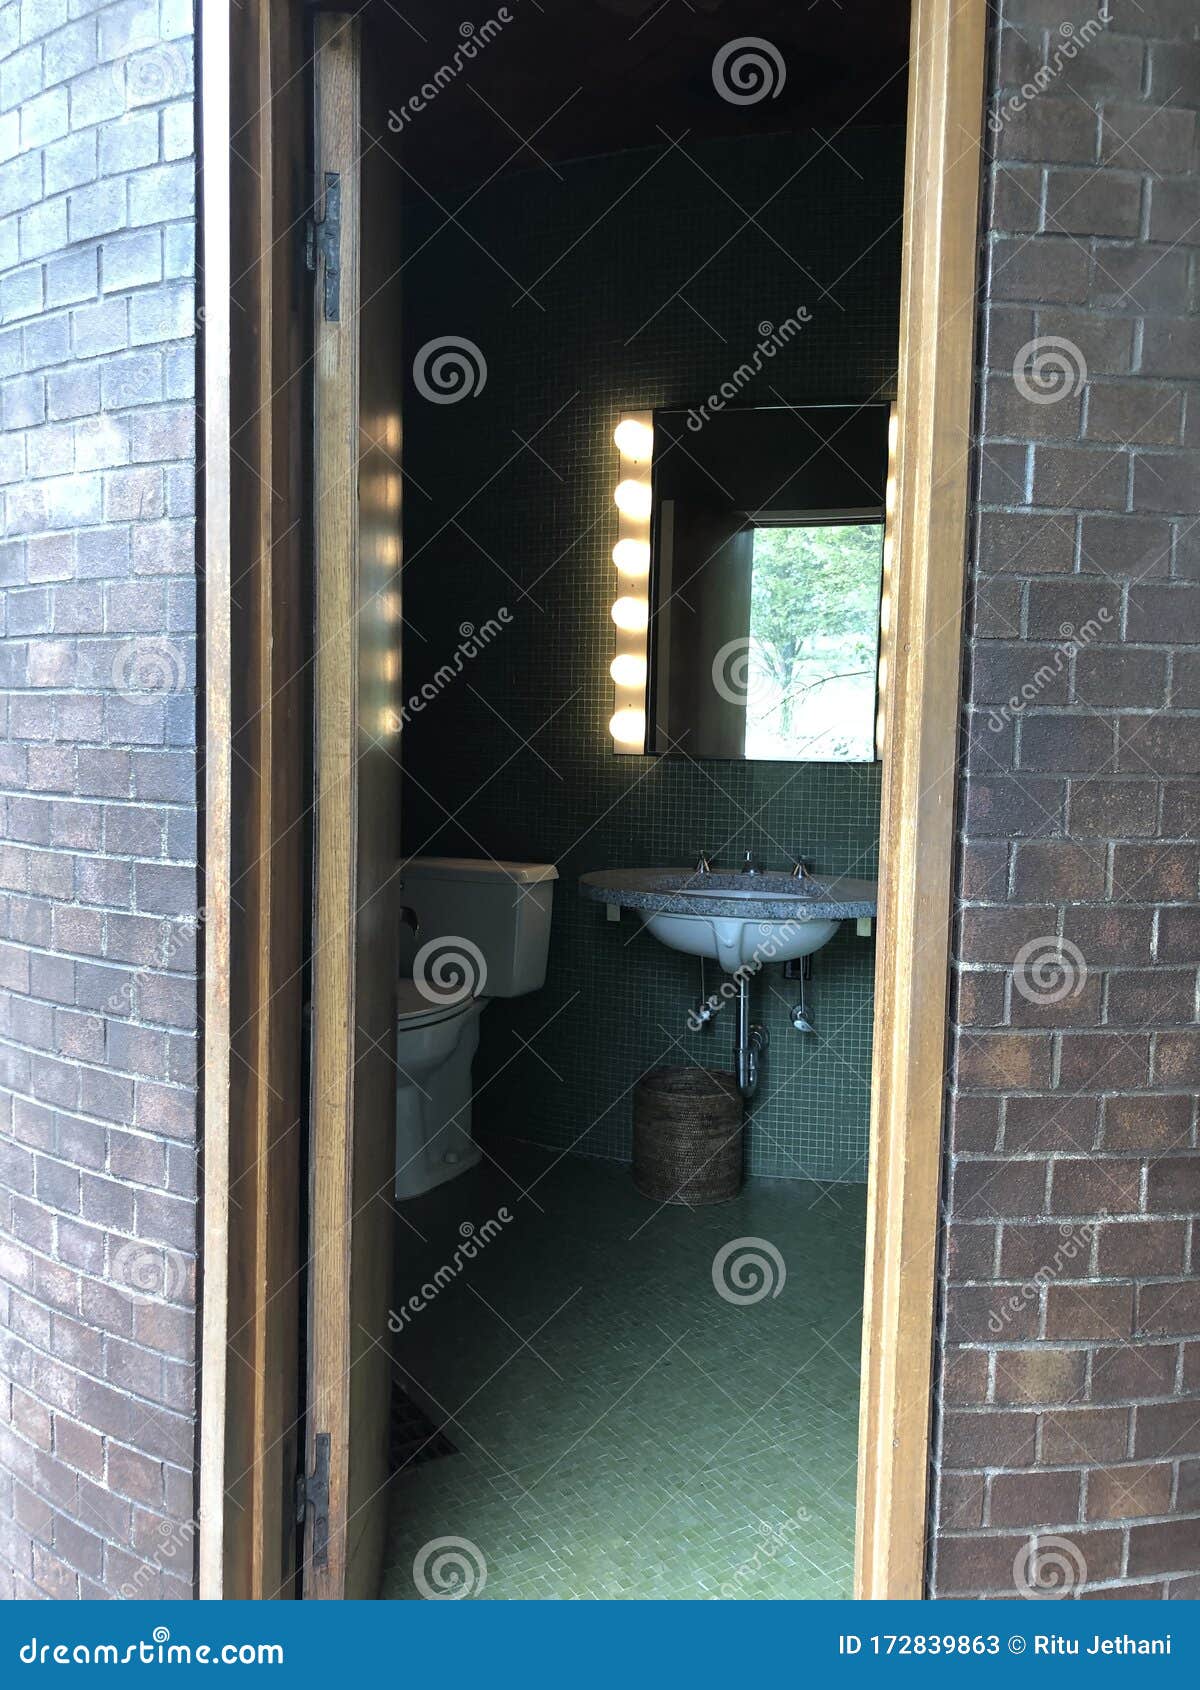 philip johnson glass house bathroom